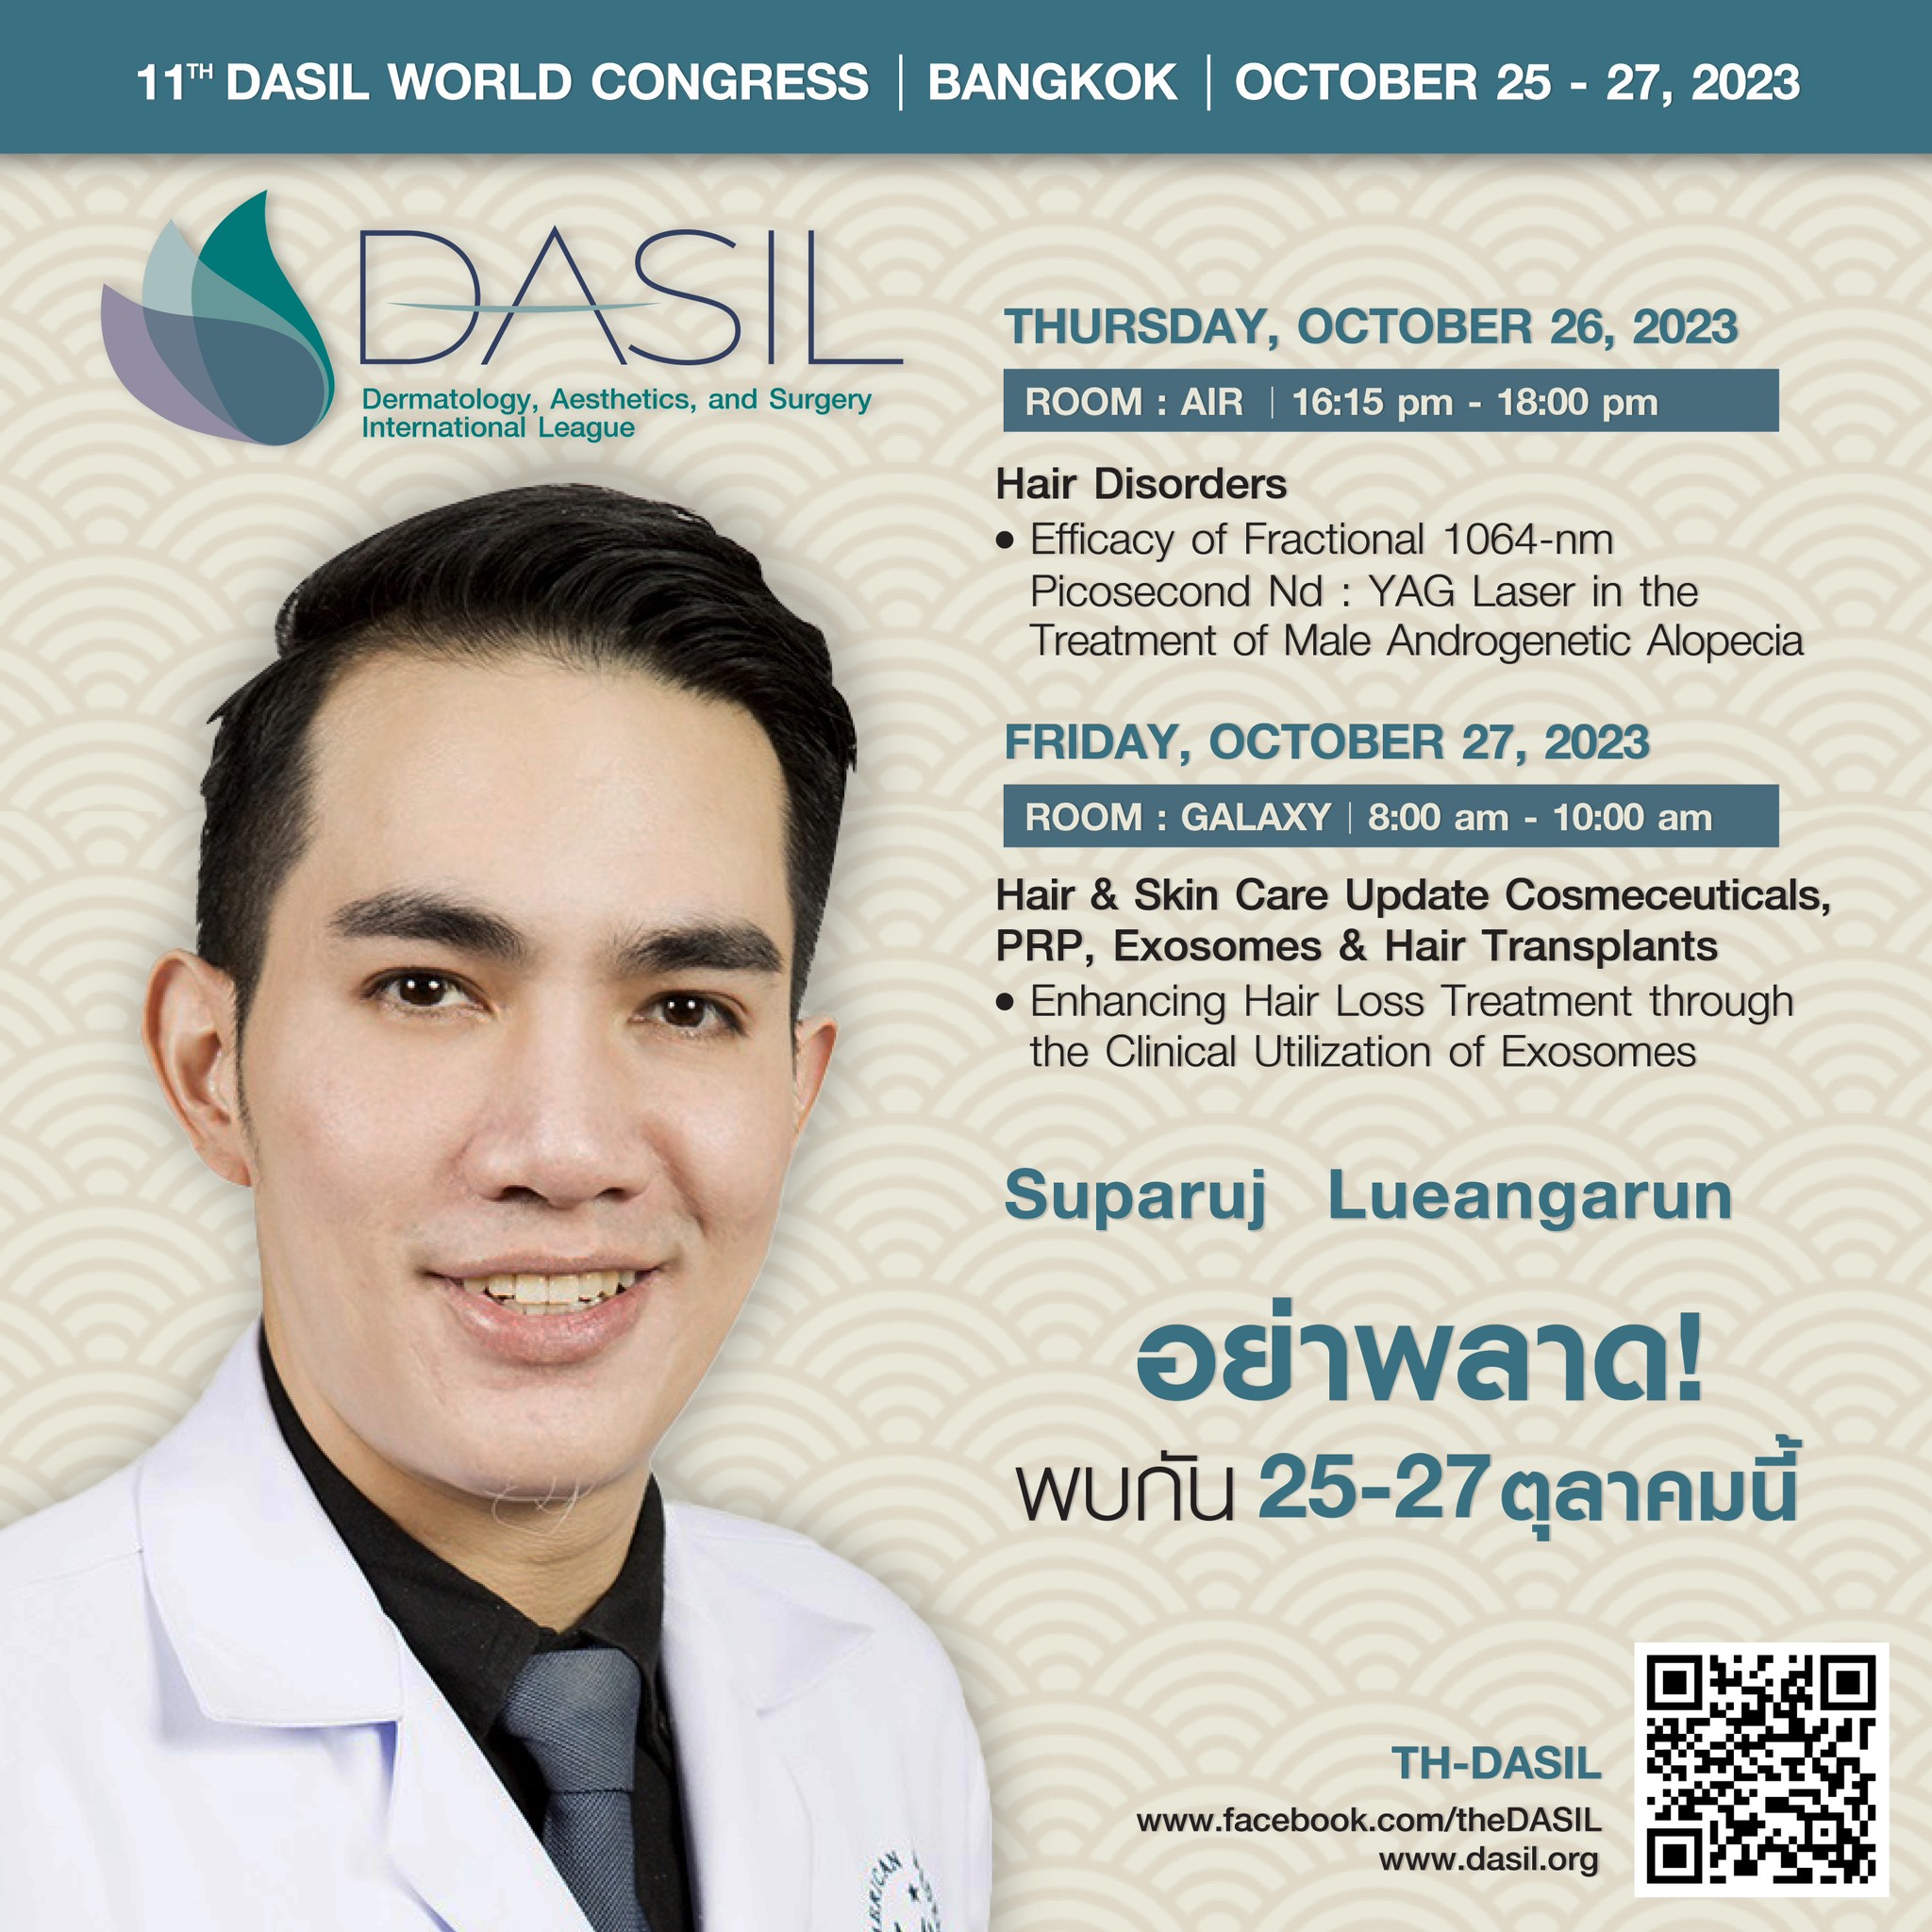 หมอรุจ (ผู้ช่วยศาสตราจารย์นายแพทย์ศุภะรุจ เลื่องอรุณ) ได้รับเกียรติเป็นวิทยากรในงานประชุมระดับโลก DASIL Congress ครับ